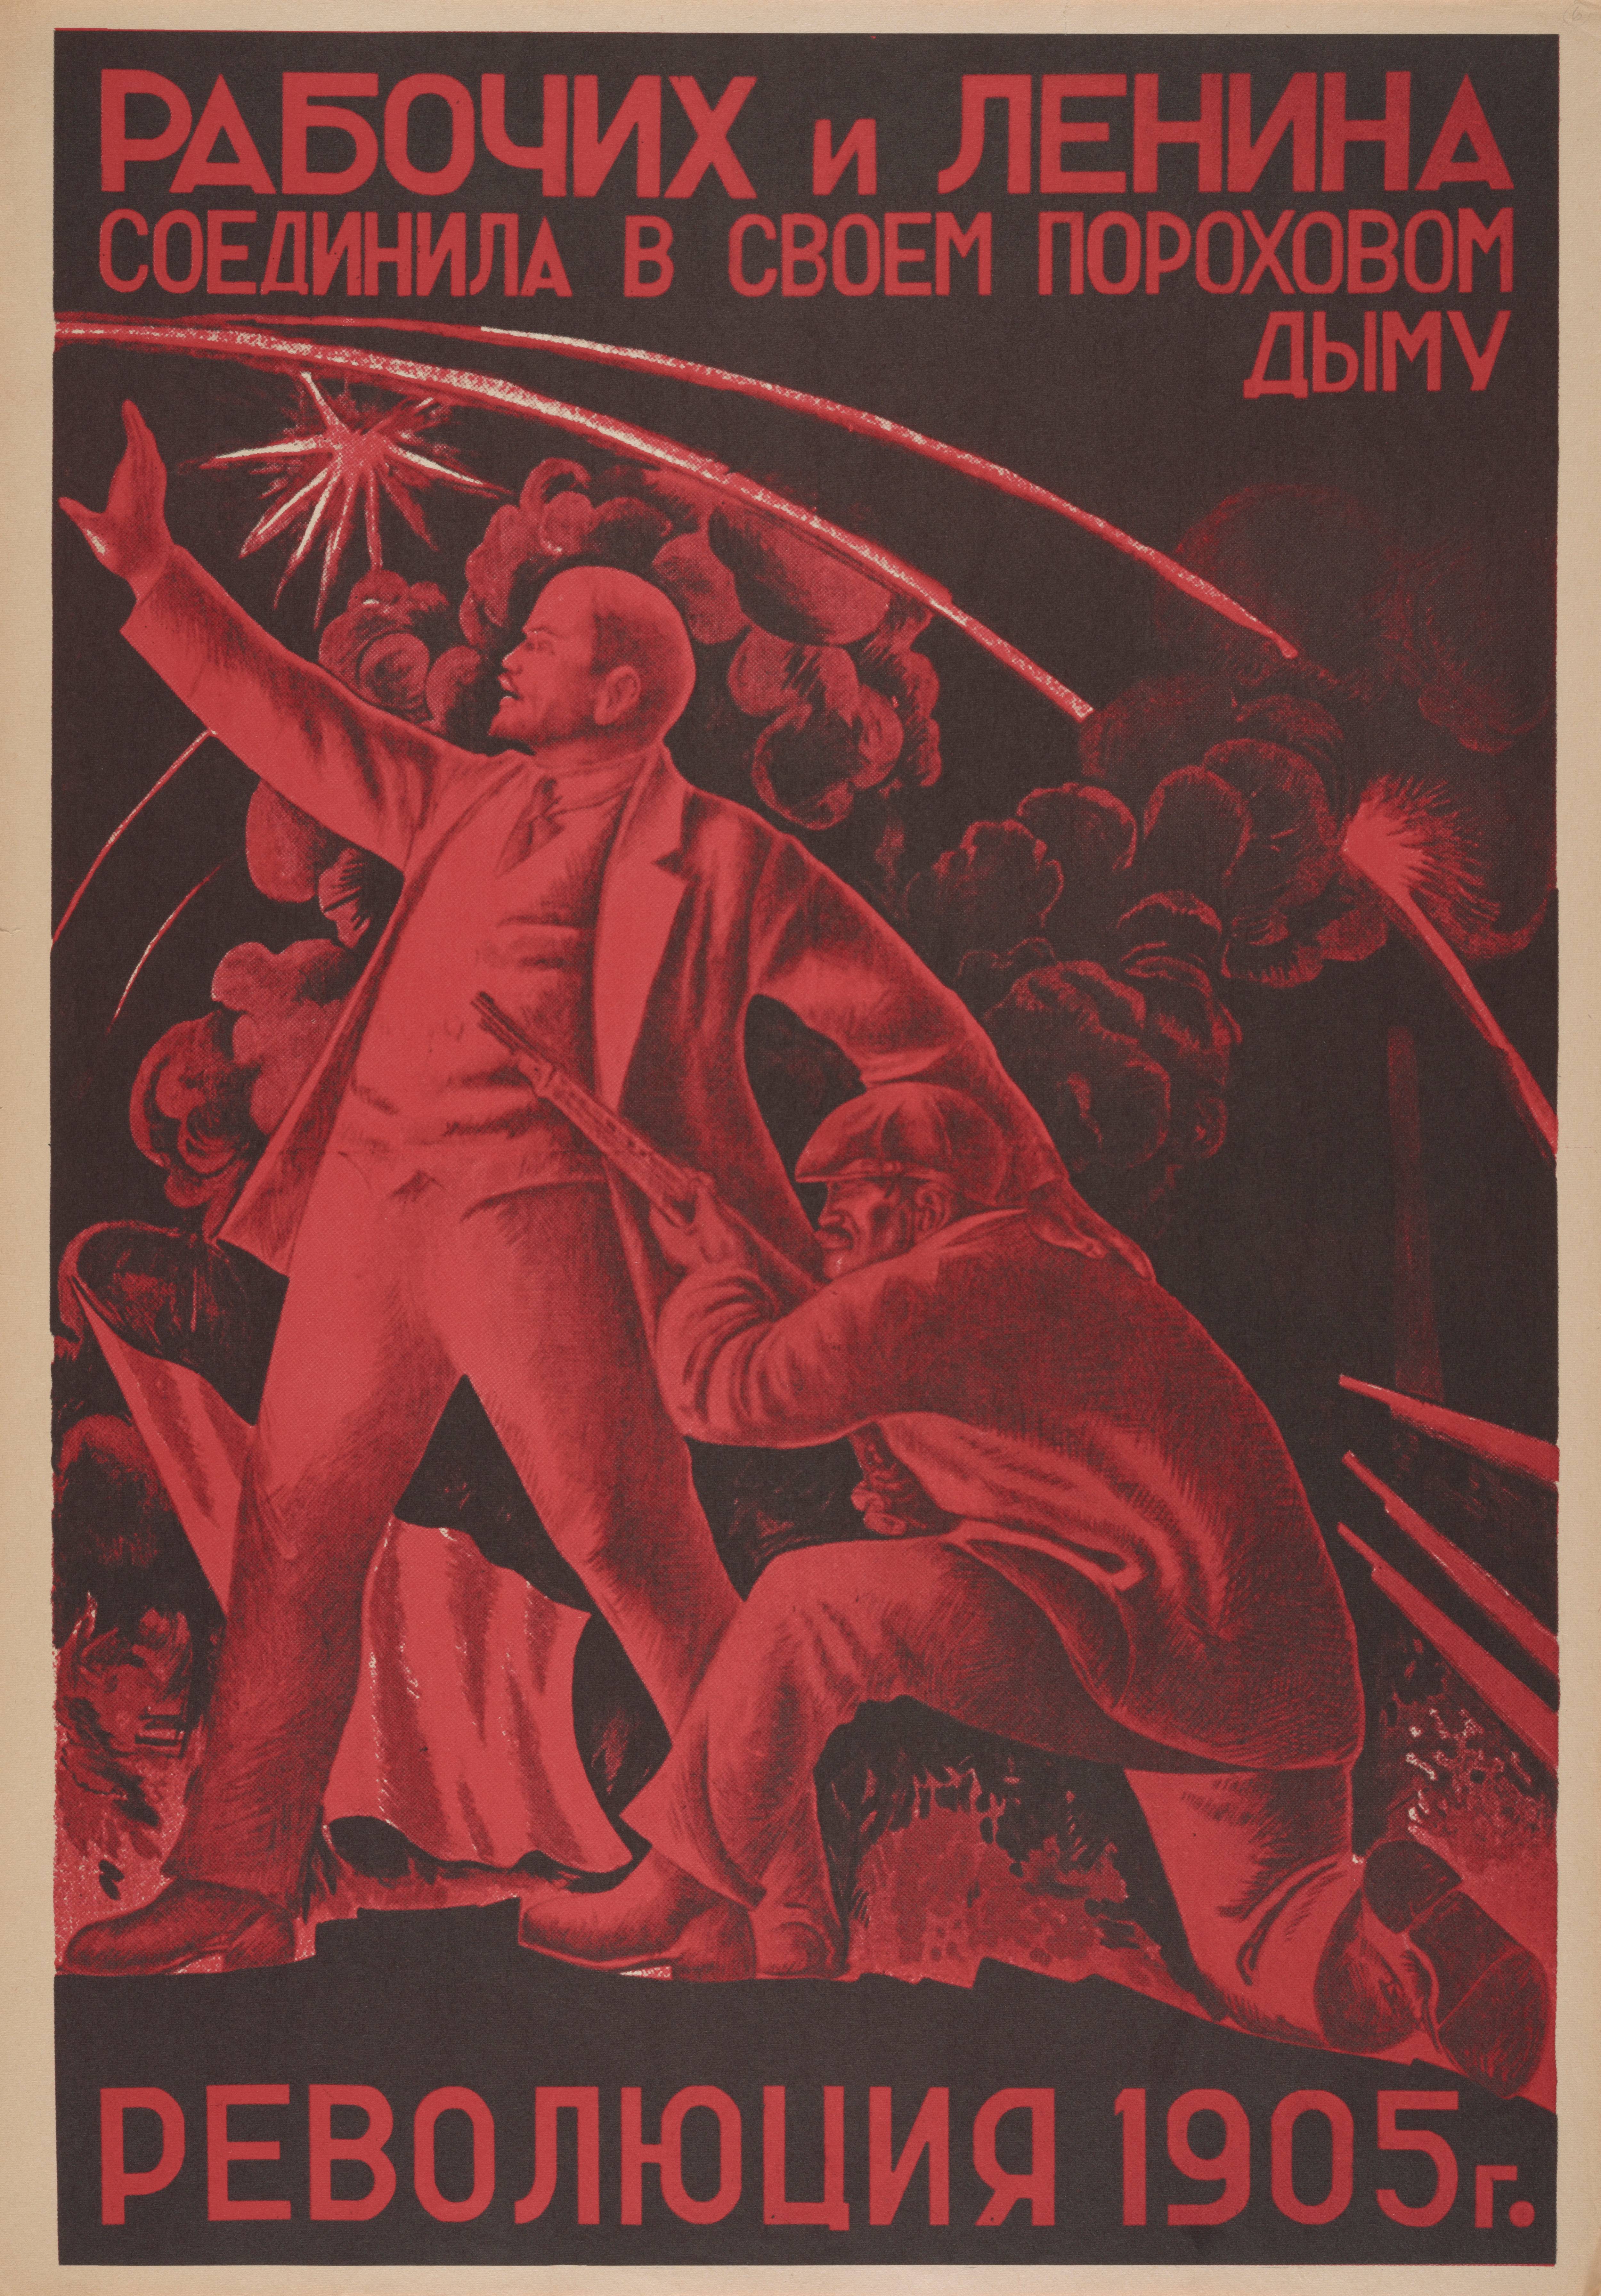 А. Самохвалов. Плакат. 1925. A. Samokhvalov. Les ouvriers et Lénine furent réunis par la Révolution de 1905.